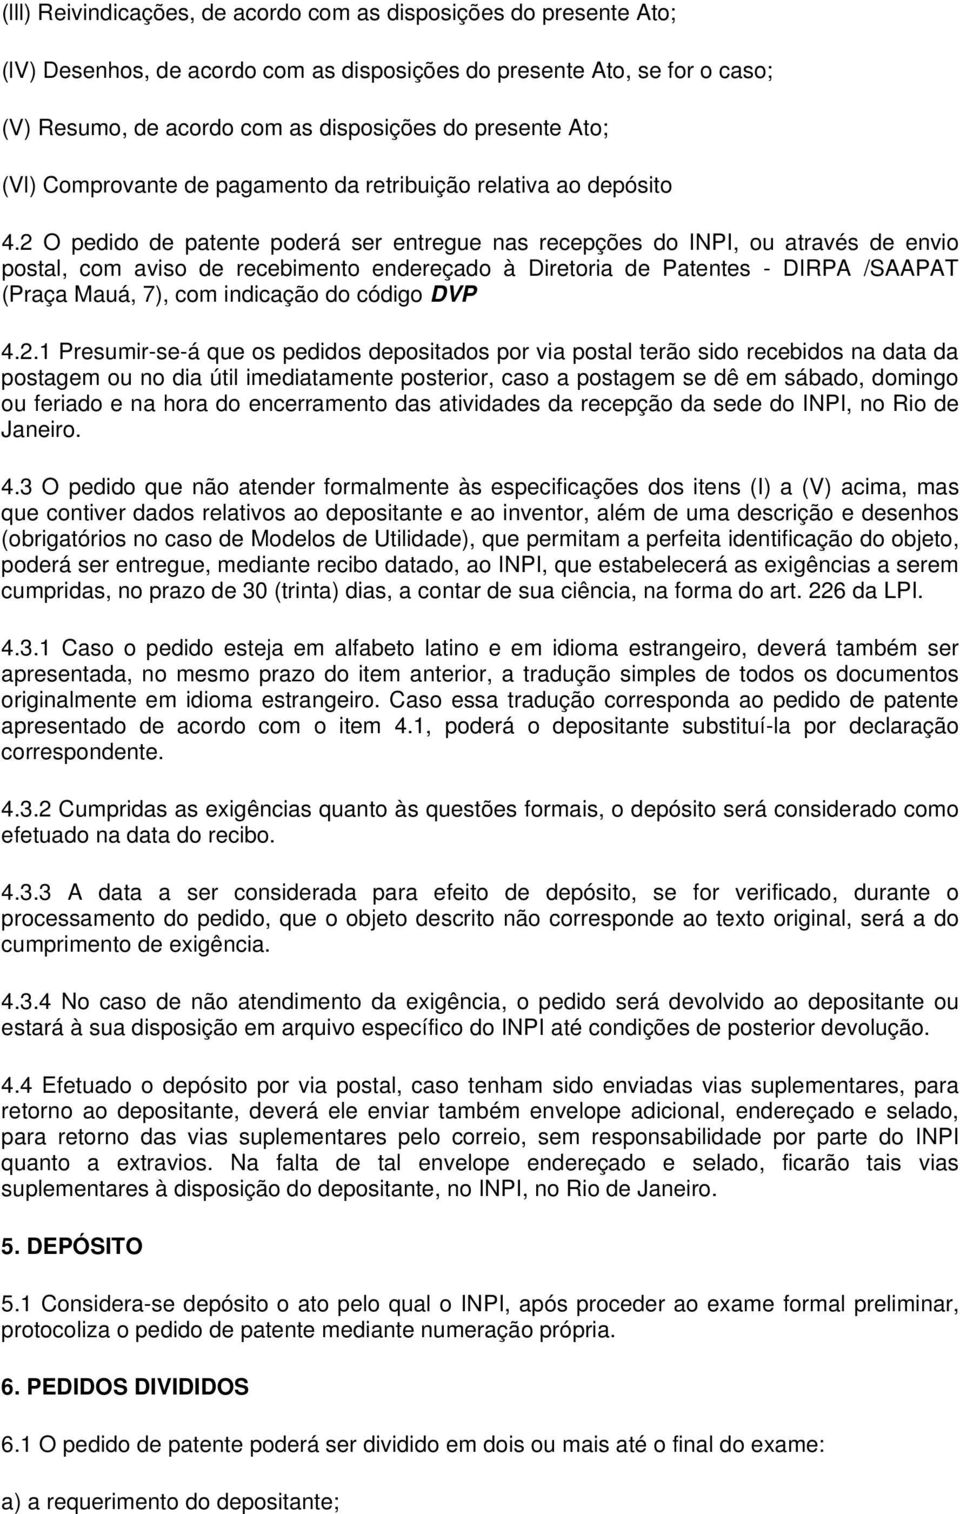 2 O pedido de patente poderá ser entregue nas recepções do INPI, ou através de envio postal, com aviso de recebimento endereçado à Diretoria de Patentes - DIRPA /SAAPAT (Praça Mauá, 7), com indicação